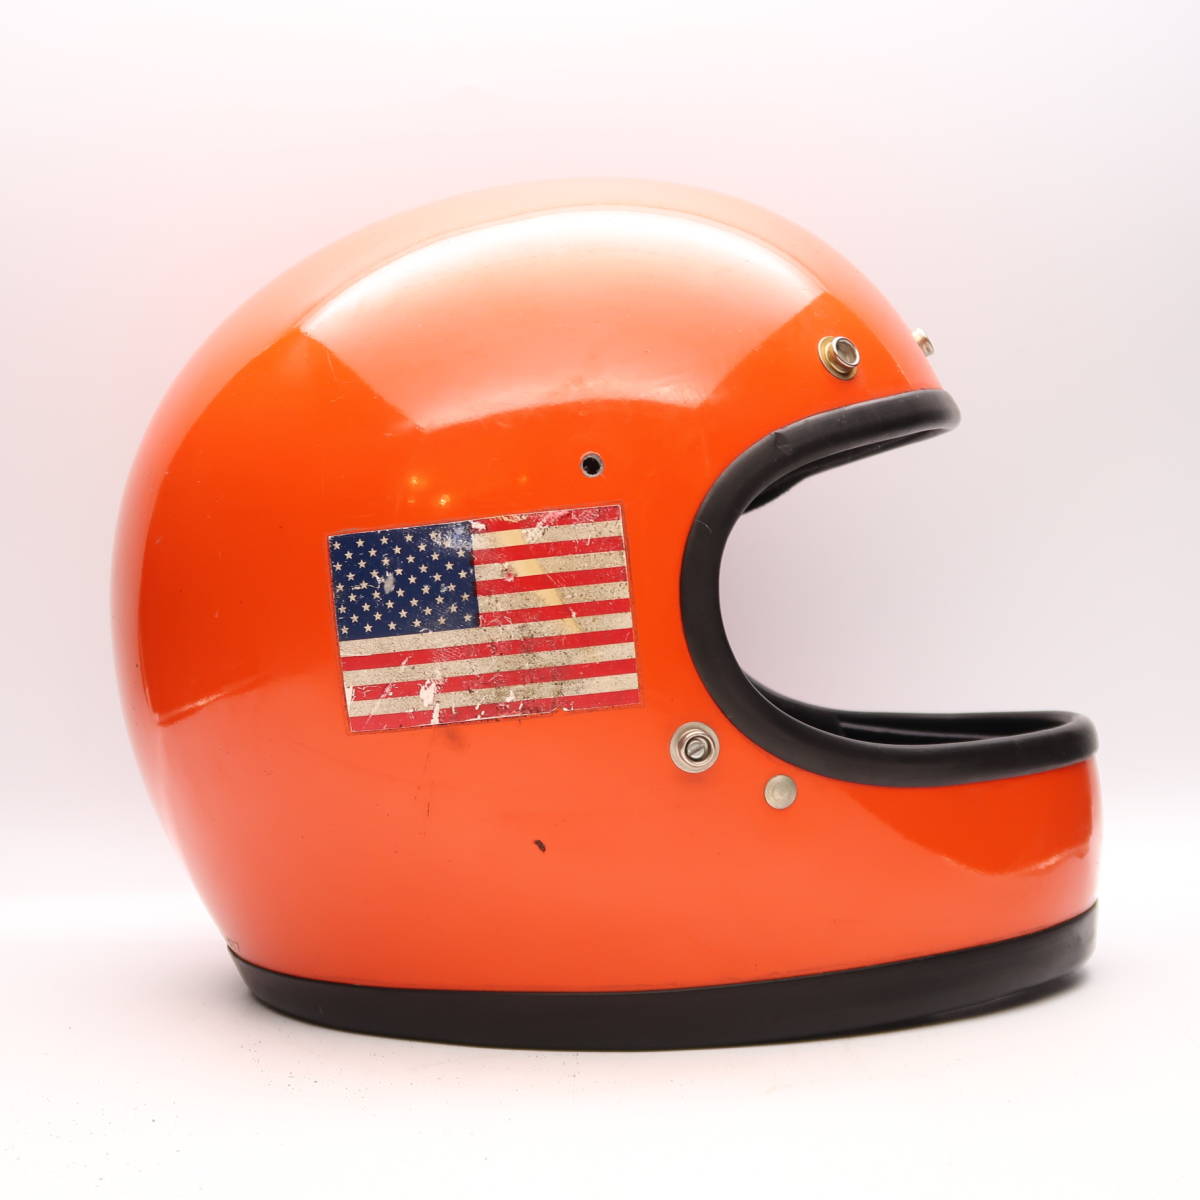 70s BELL STAR 120 orange full-face шлем bell Star 500TX группа ад GT380 KH400 Z1 Z2 CB750 Z750 KZ1000